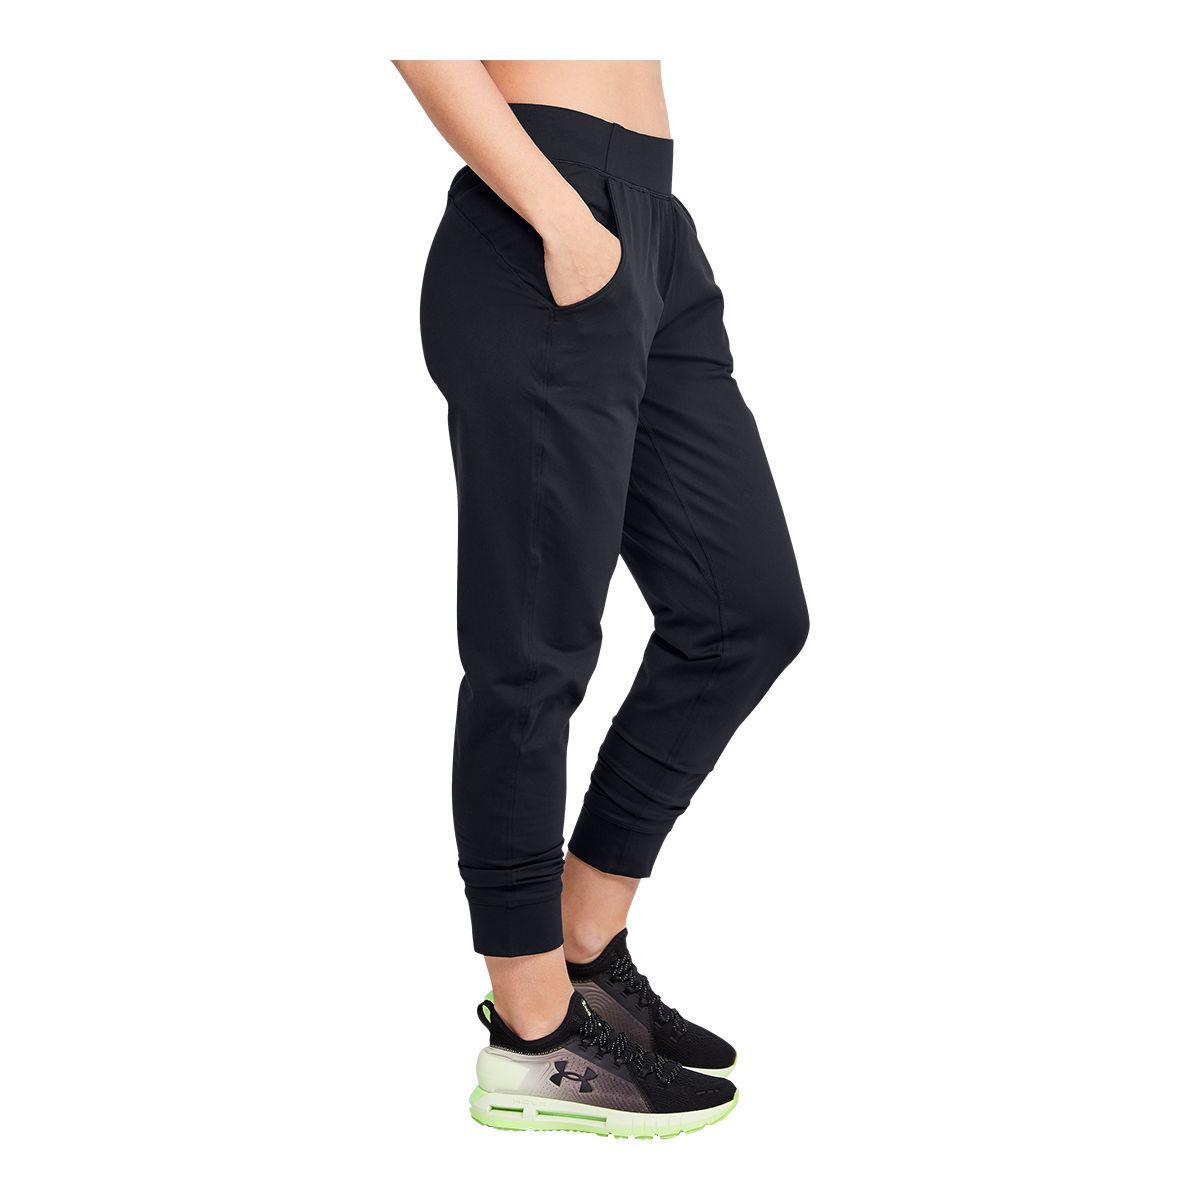 Women's black Under Armour Jogging Pants Size XS, Jogging Bottoms for Women